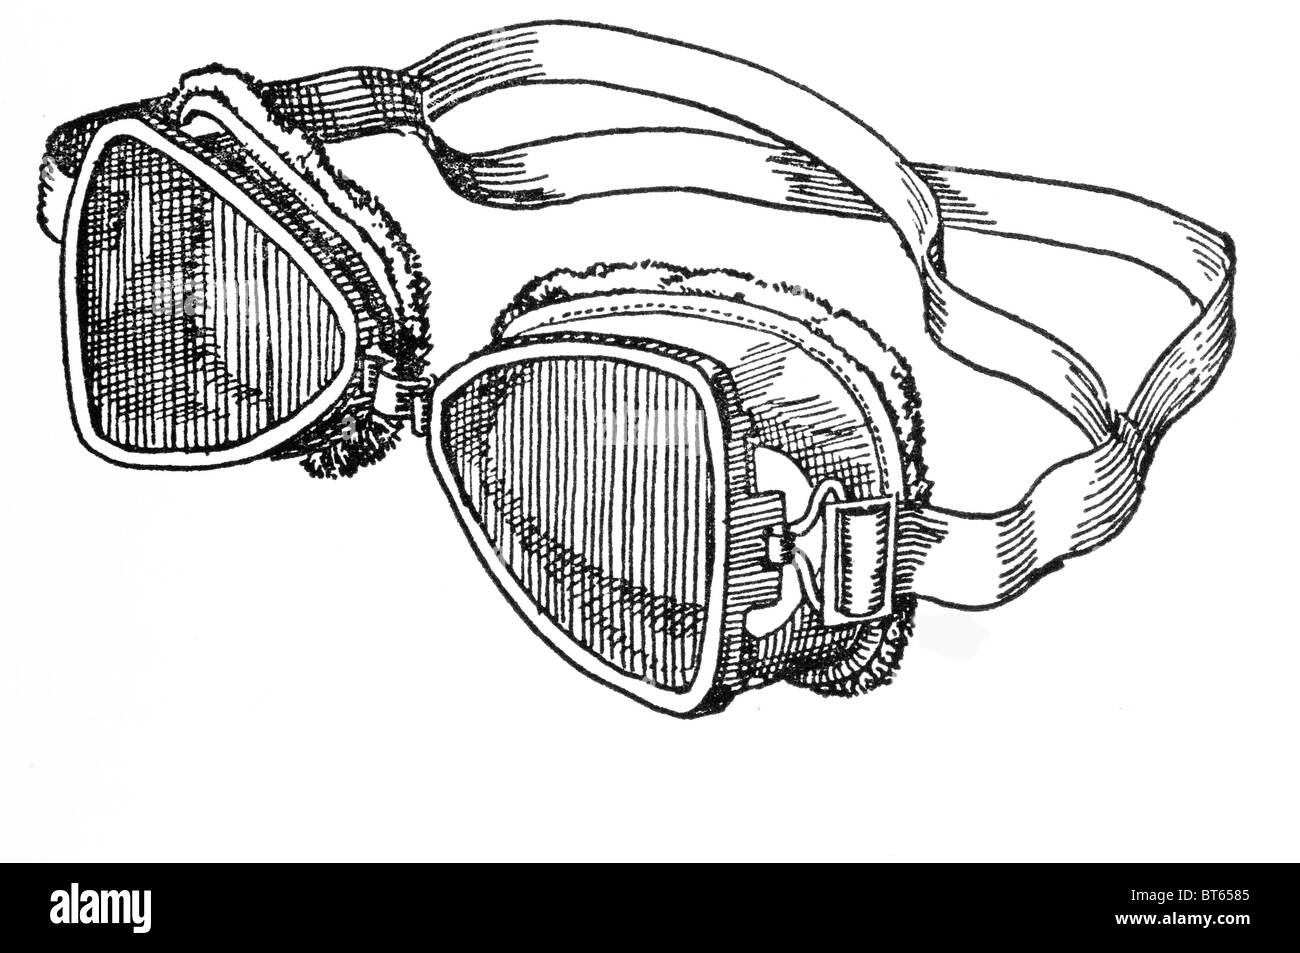 Occhiali antartico artico esplorare esplorazione di protezione degli occhi neve sci occhiali di sicurezza sono forme di occhiali protettivi che usuall Foto Stock